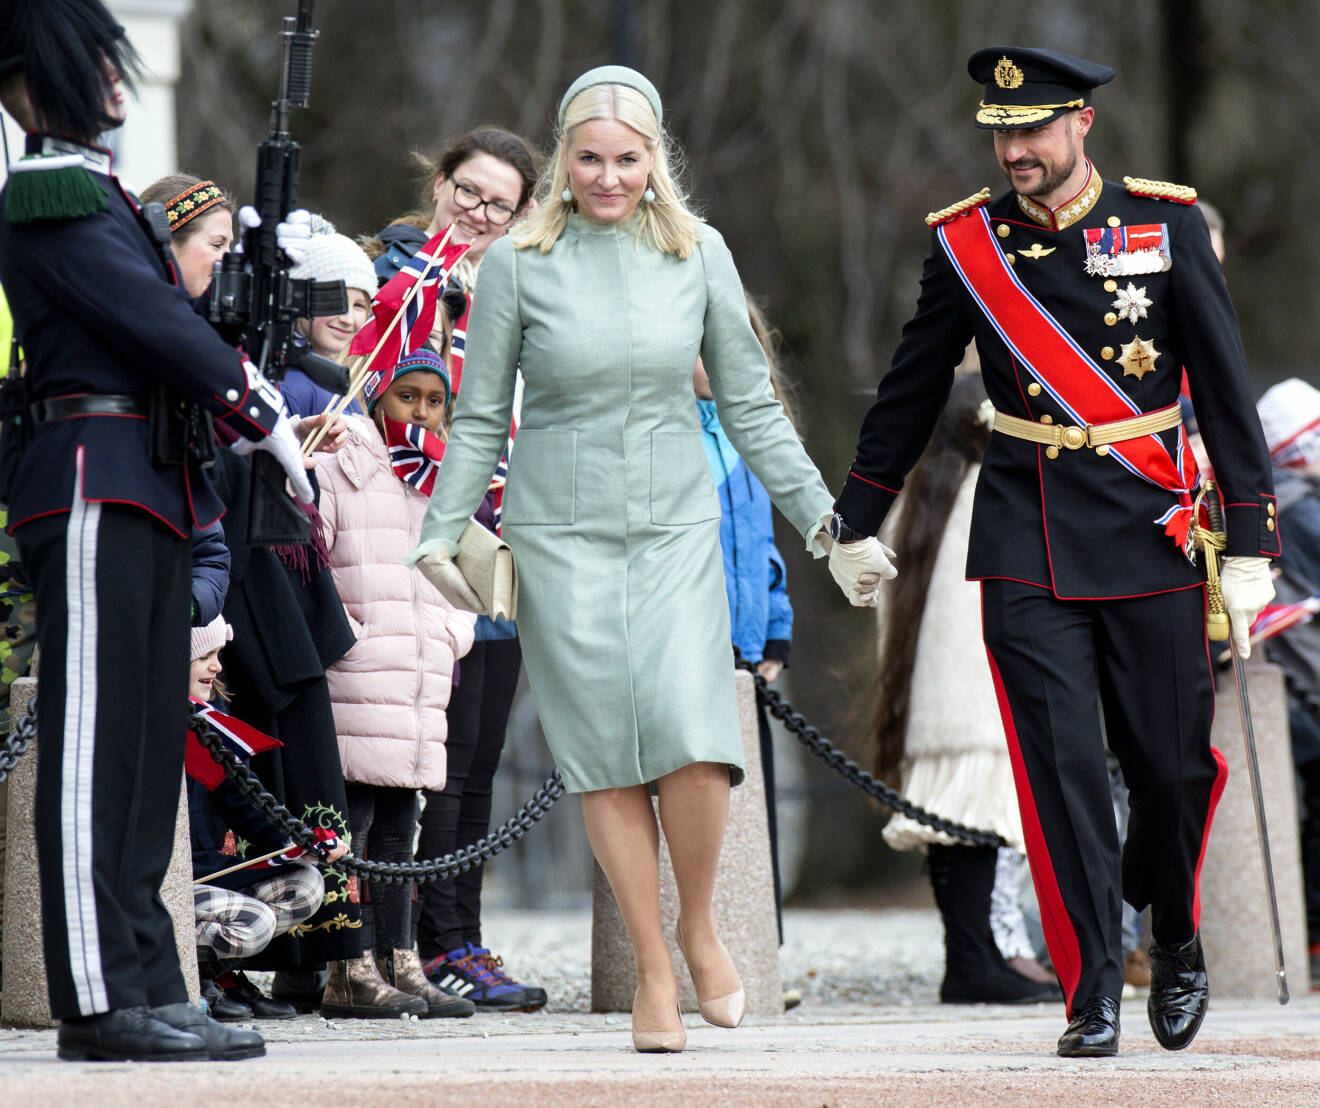 Kronprinsessan Mette-Marit Kronprins Haakon Statsbesök Oslo